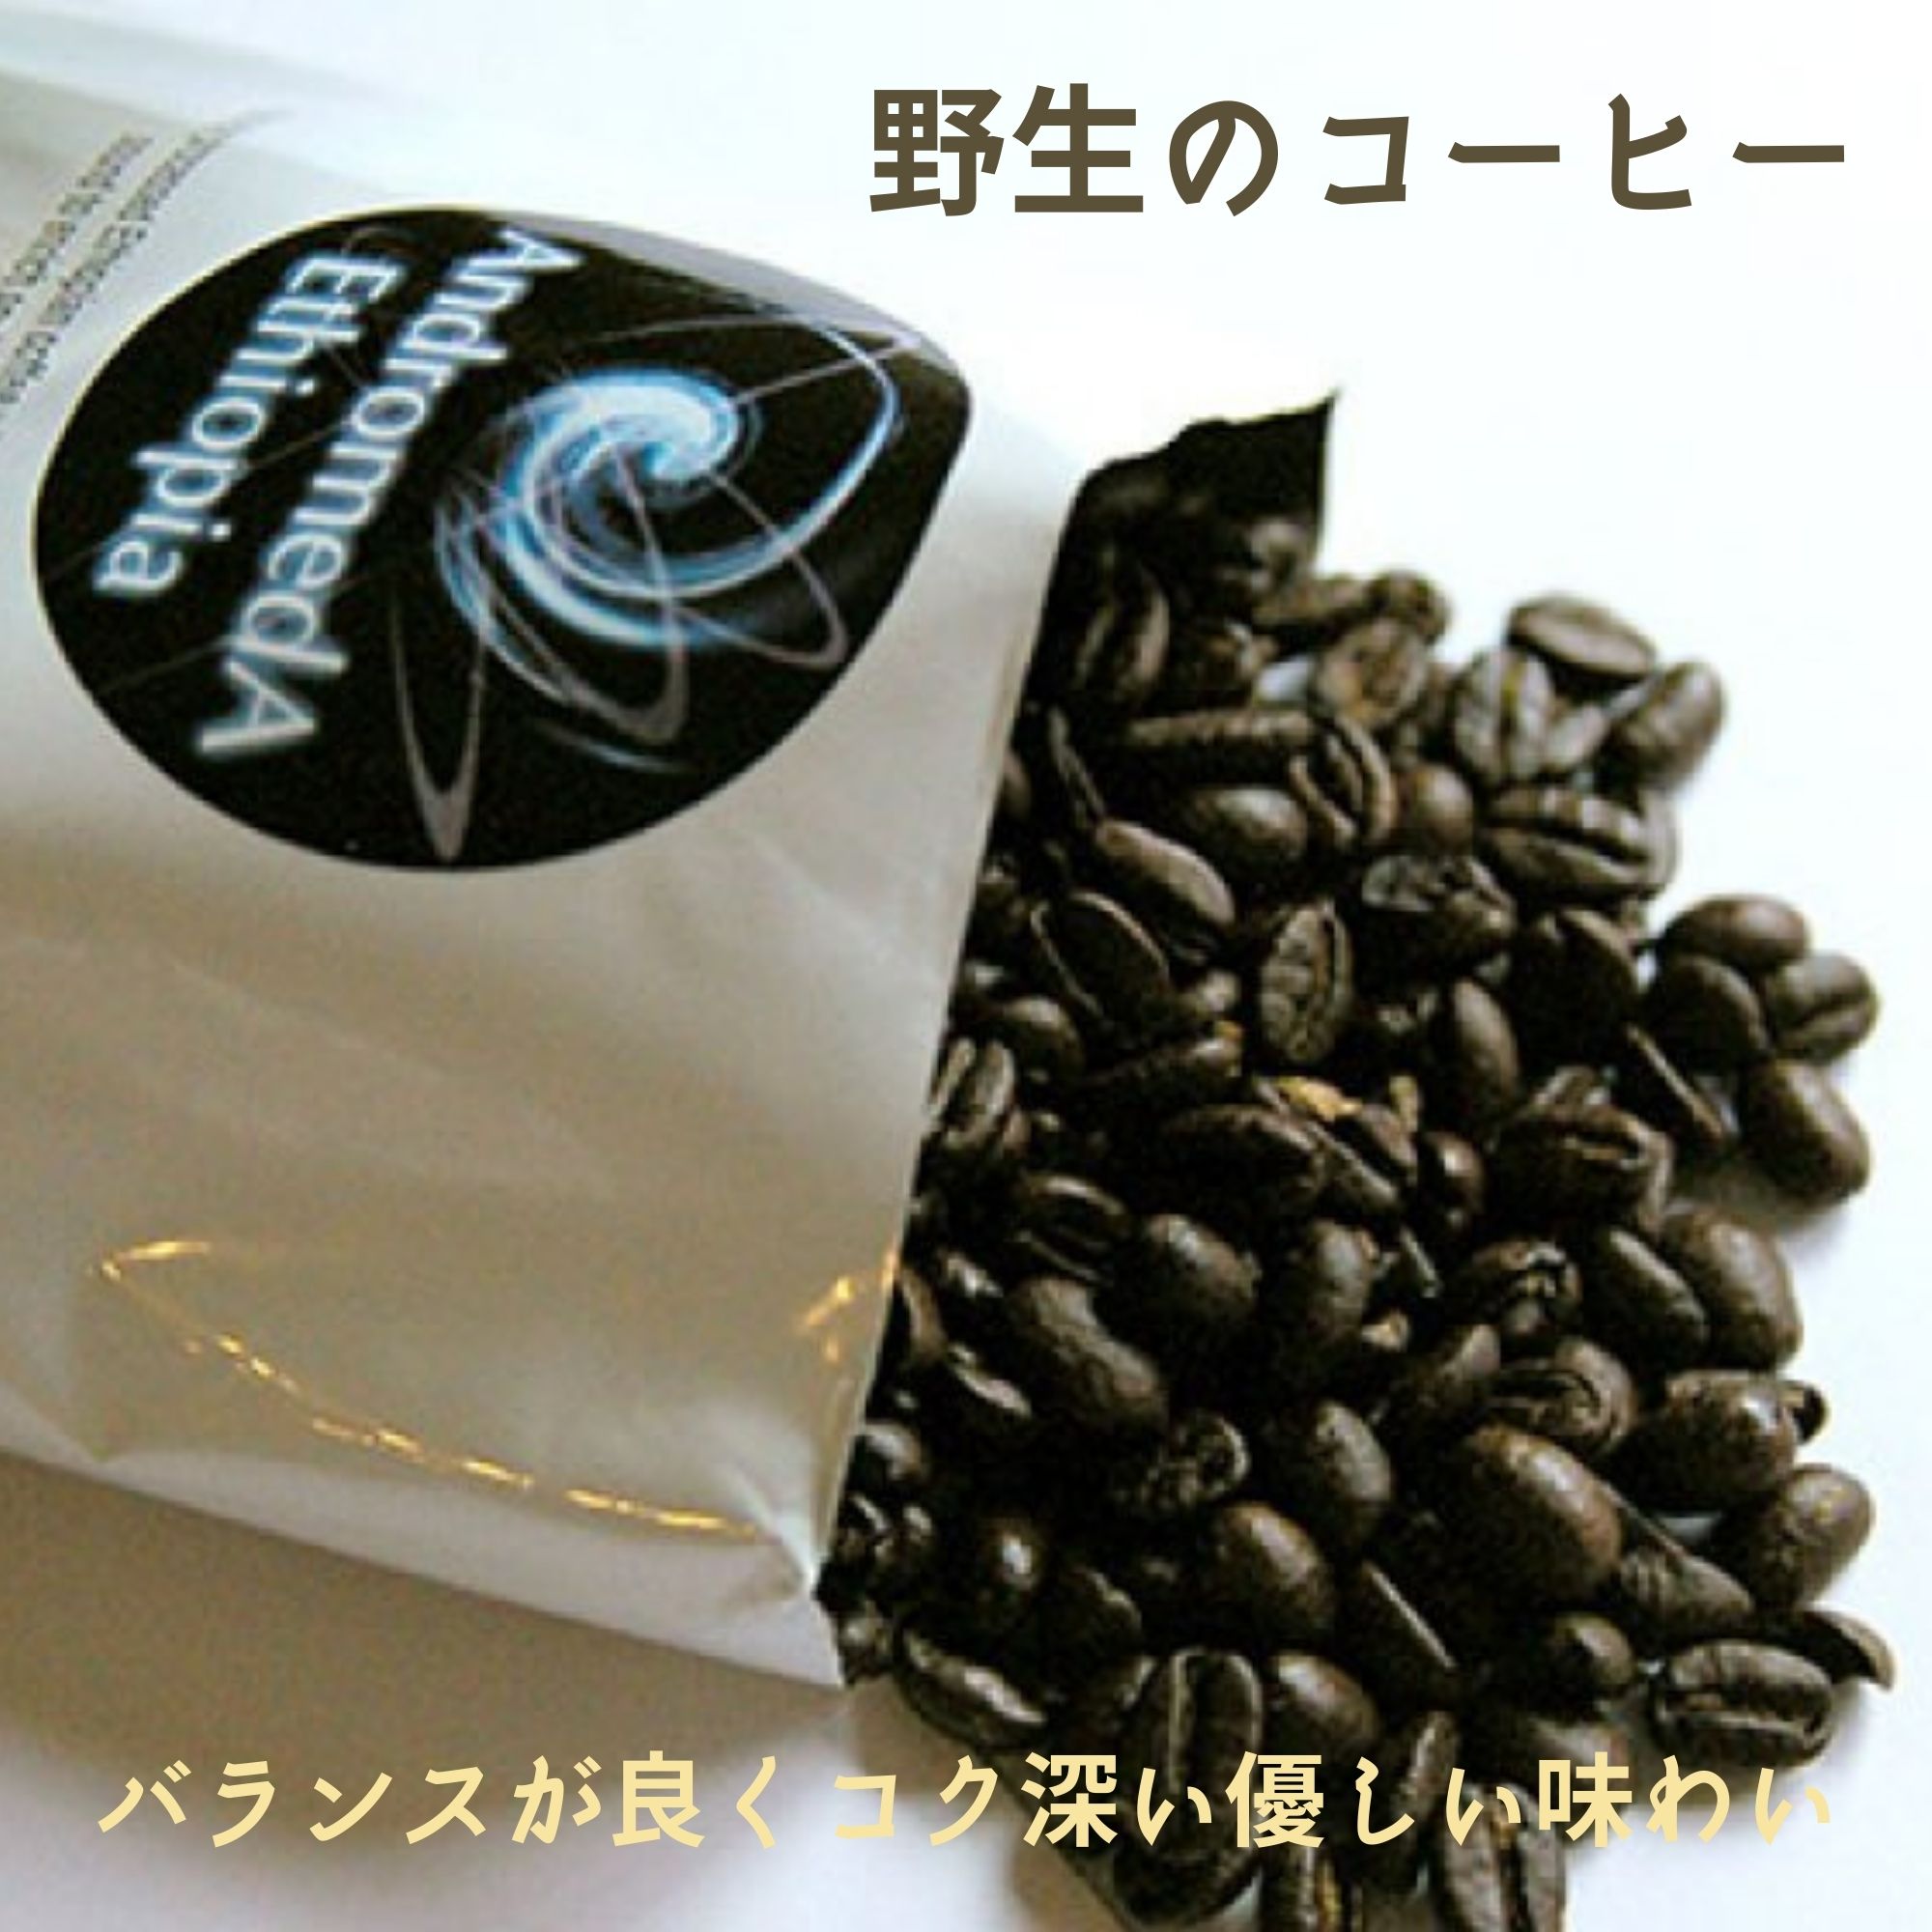 野生のコーヒー/アンドロメダエチオピアコーヒー〈リム〉コーヒー豆100g